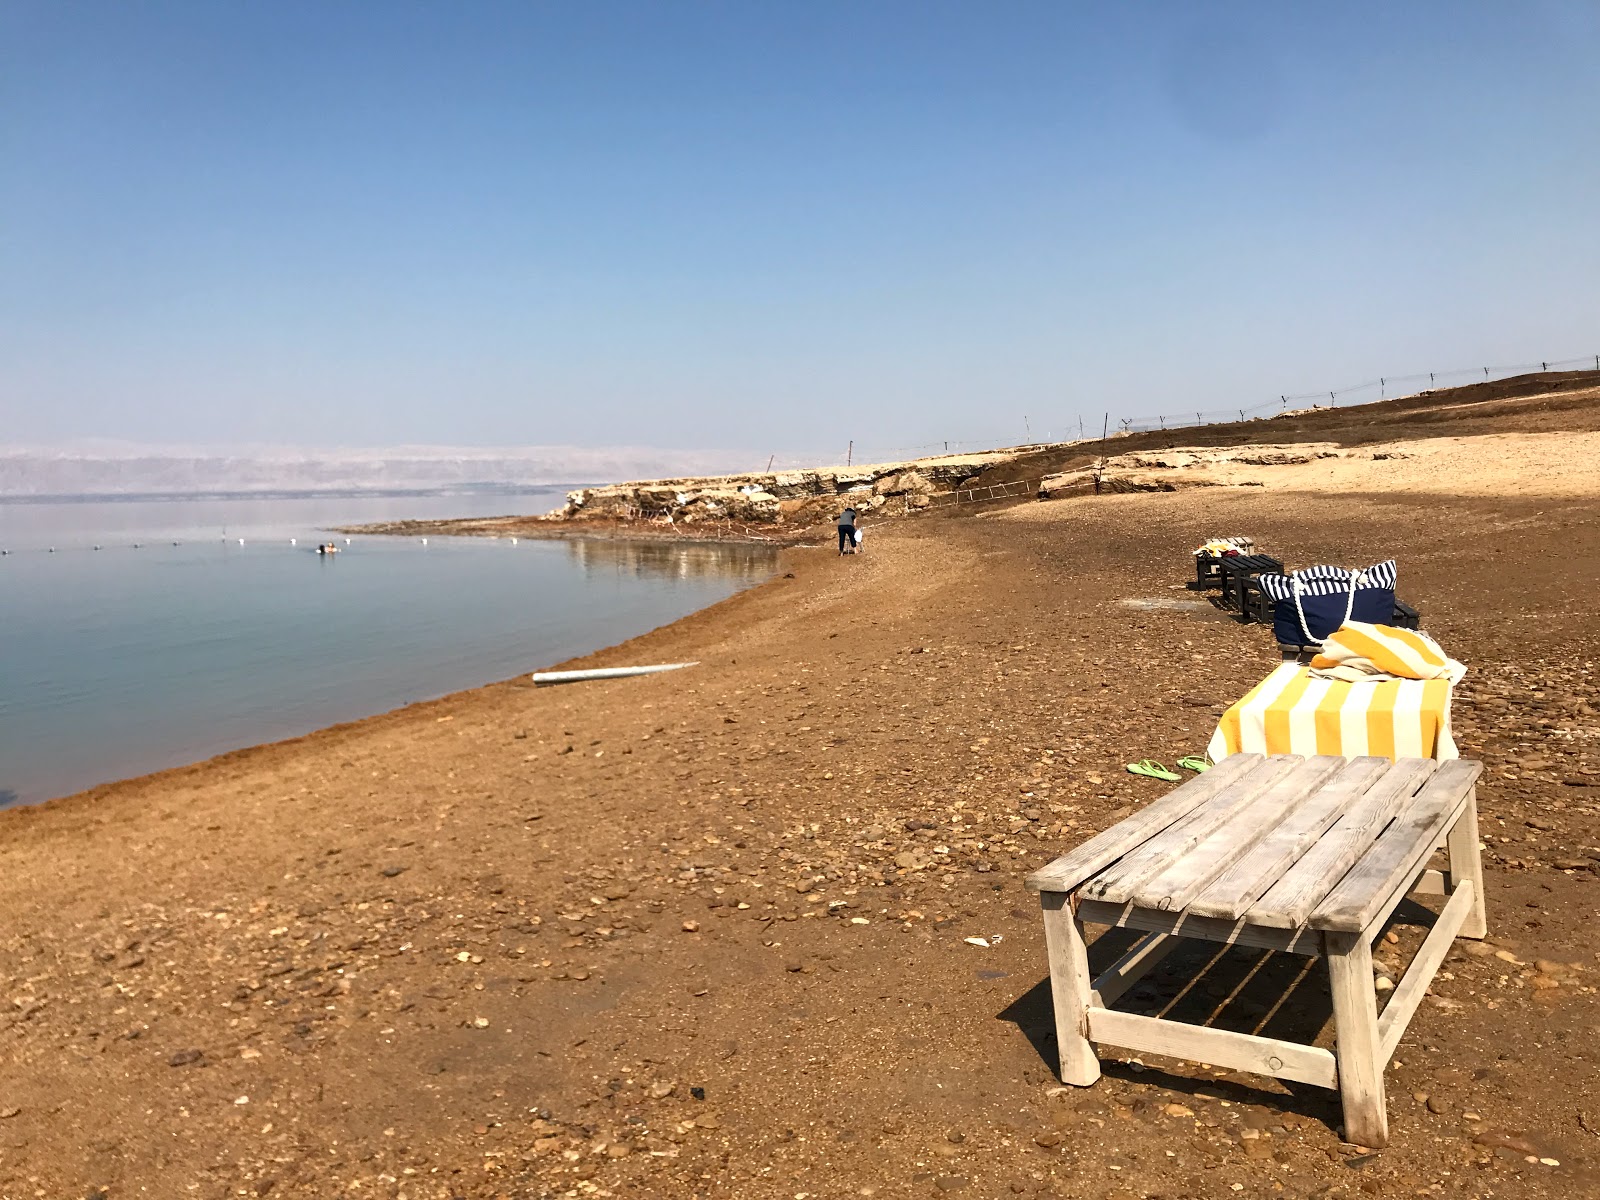 Zdjęcie Dead Sea Beach z przestronna plaża